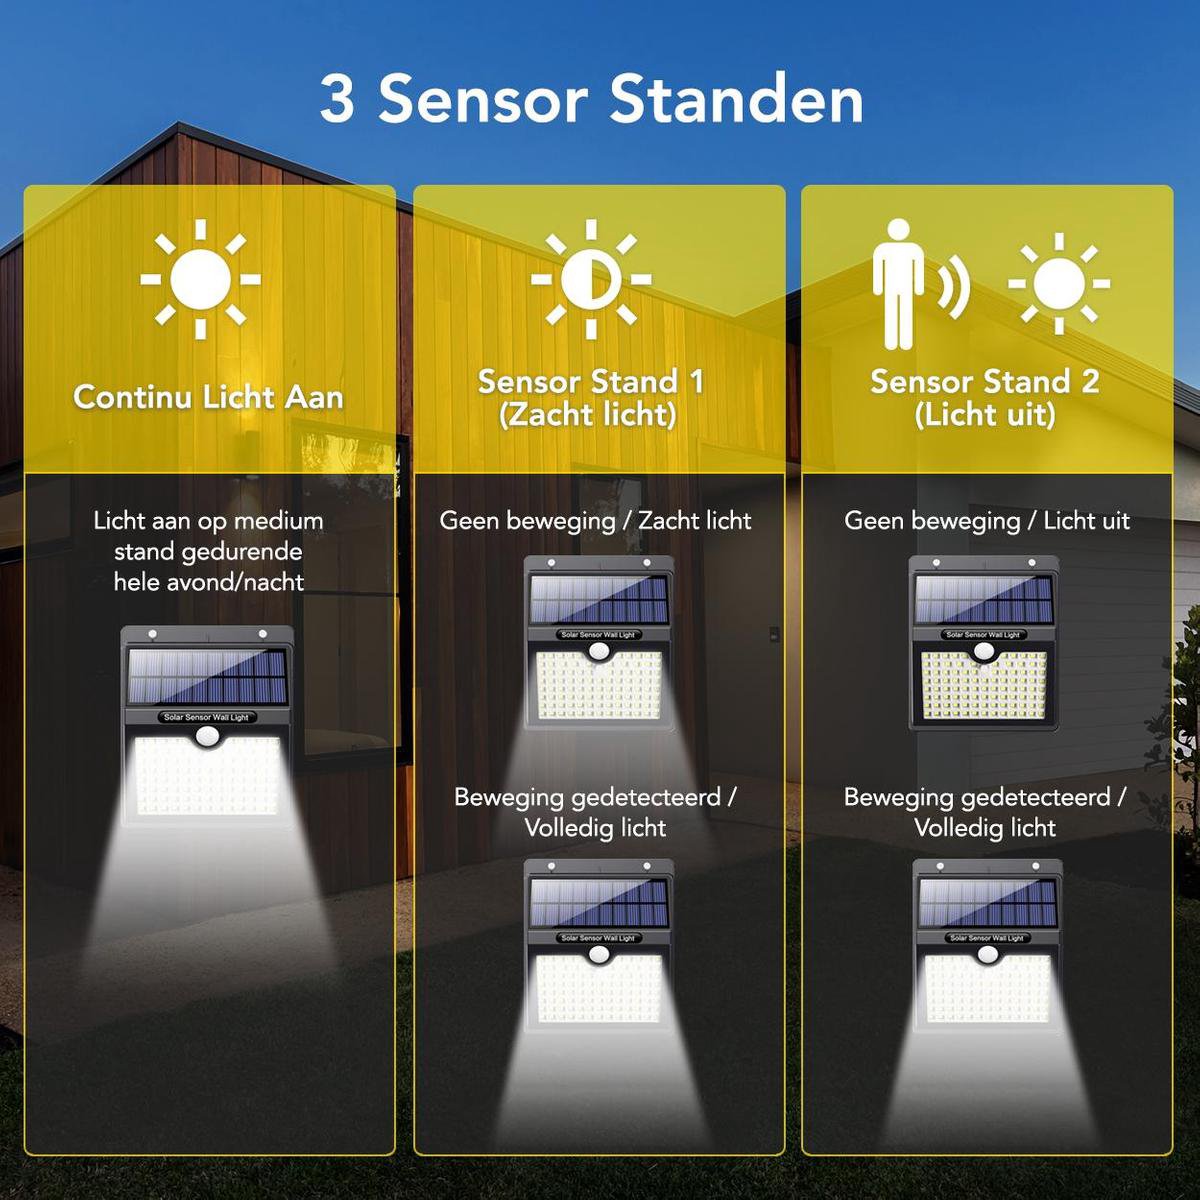 SolarWalls™ - Solar 208 LED Buitenlamp | Bewegingssensor - Werkt op Zonne-energie - Waterproof - Makkelijk te Installeren - Tuinverlichting